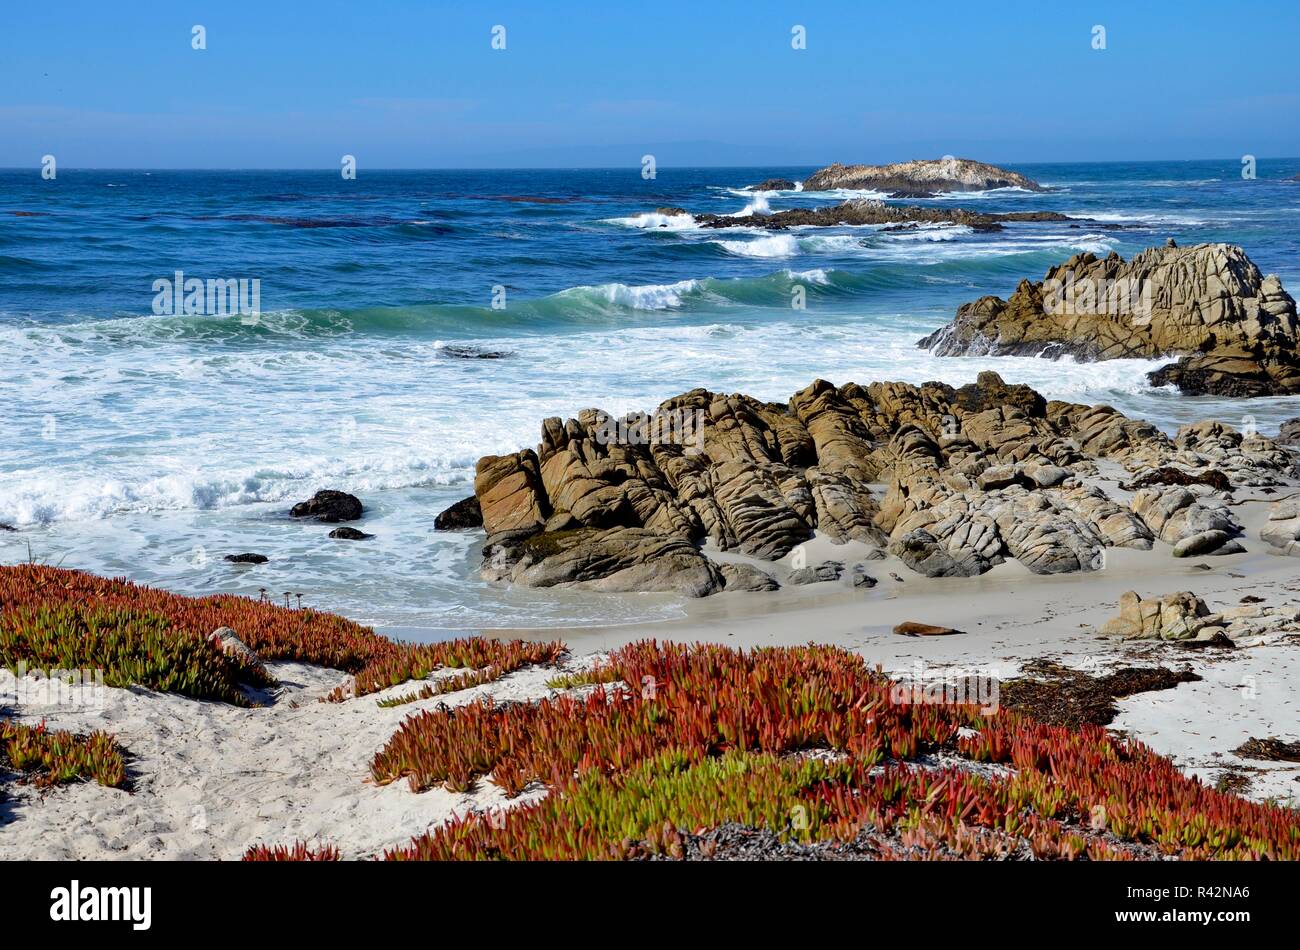 Monterey Halbinsel in der Nähe von Pebble Beach in Kalifornien, an der Küste Blick auf den Pazifischen Ozean, felsige Küste und bunten Pflanzen auf weißem Sand, September Stockfoto